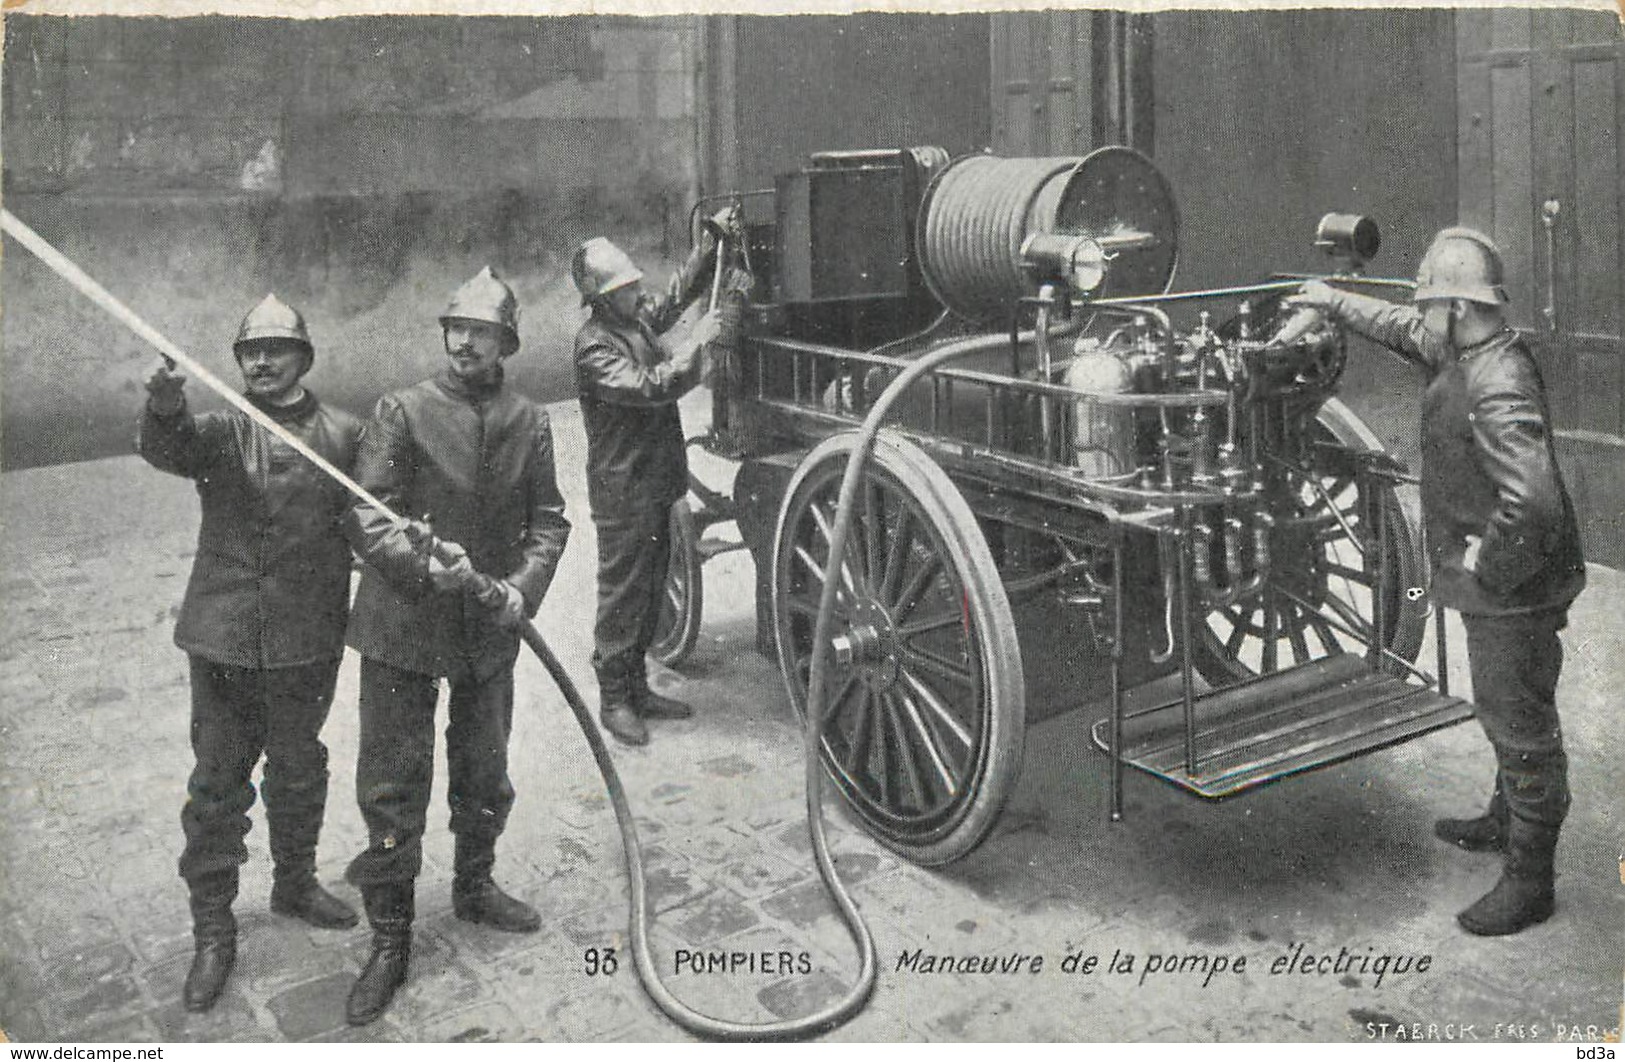 93 - POMPIERS - MANOEUVRE DE LA POMPE ELECTRIQUE - Sapeurs-Pompiers